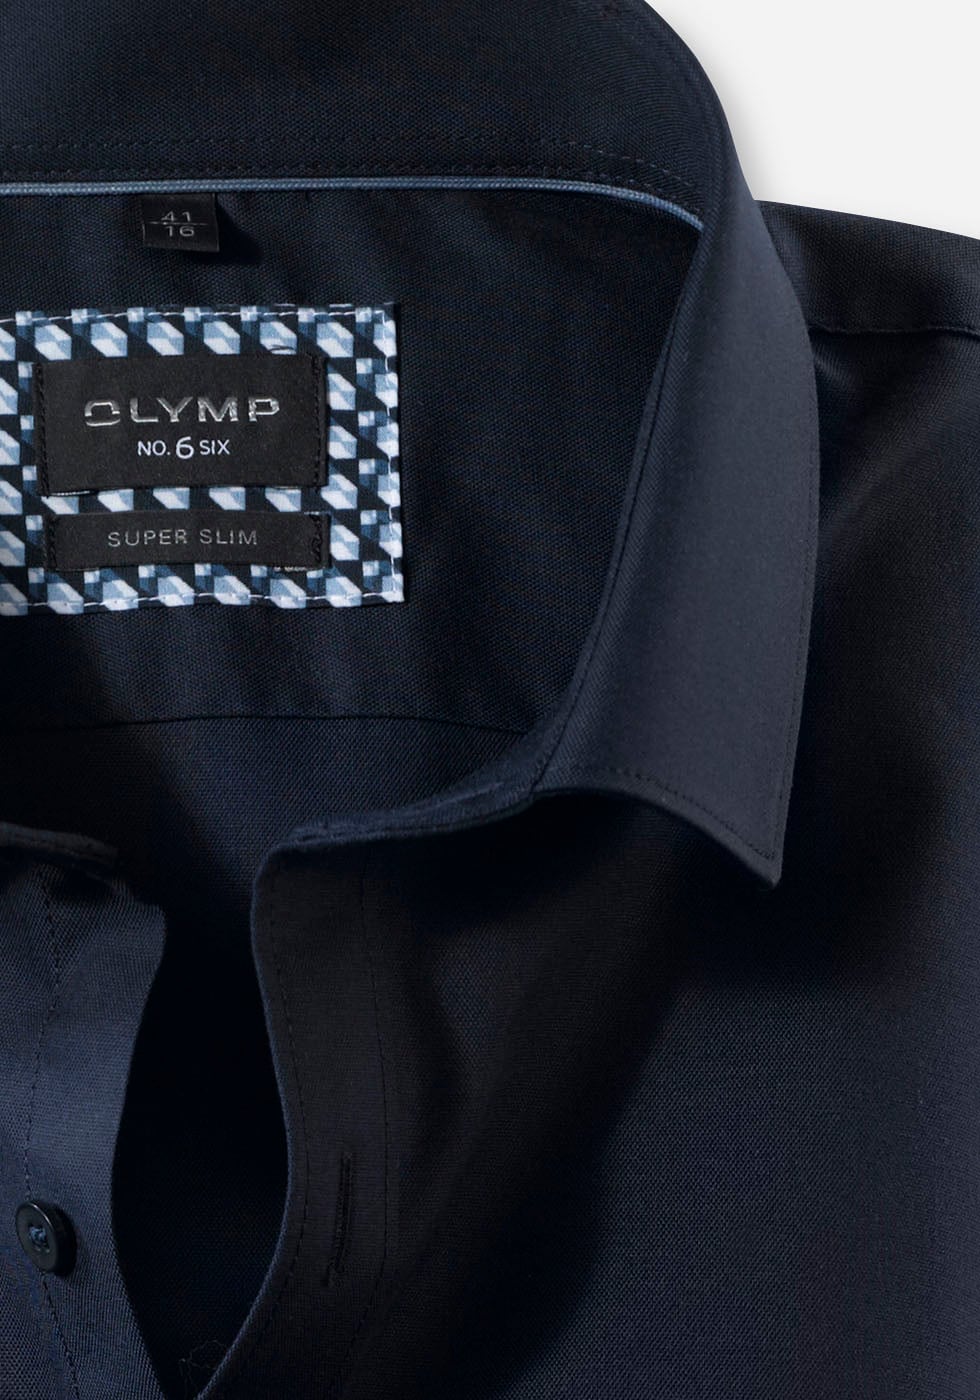 OLYMP Businesshemd »No. Six super slim«, aus der No 6 Six-Serie online  kaufen bei OTTO